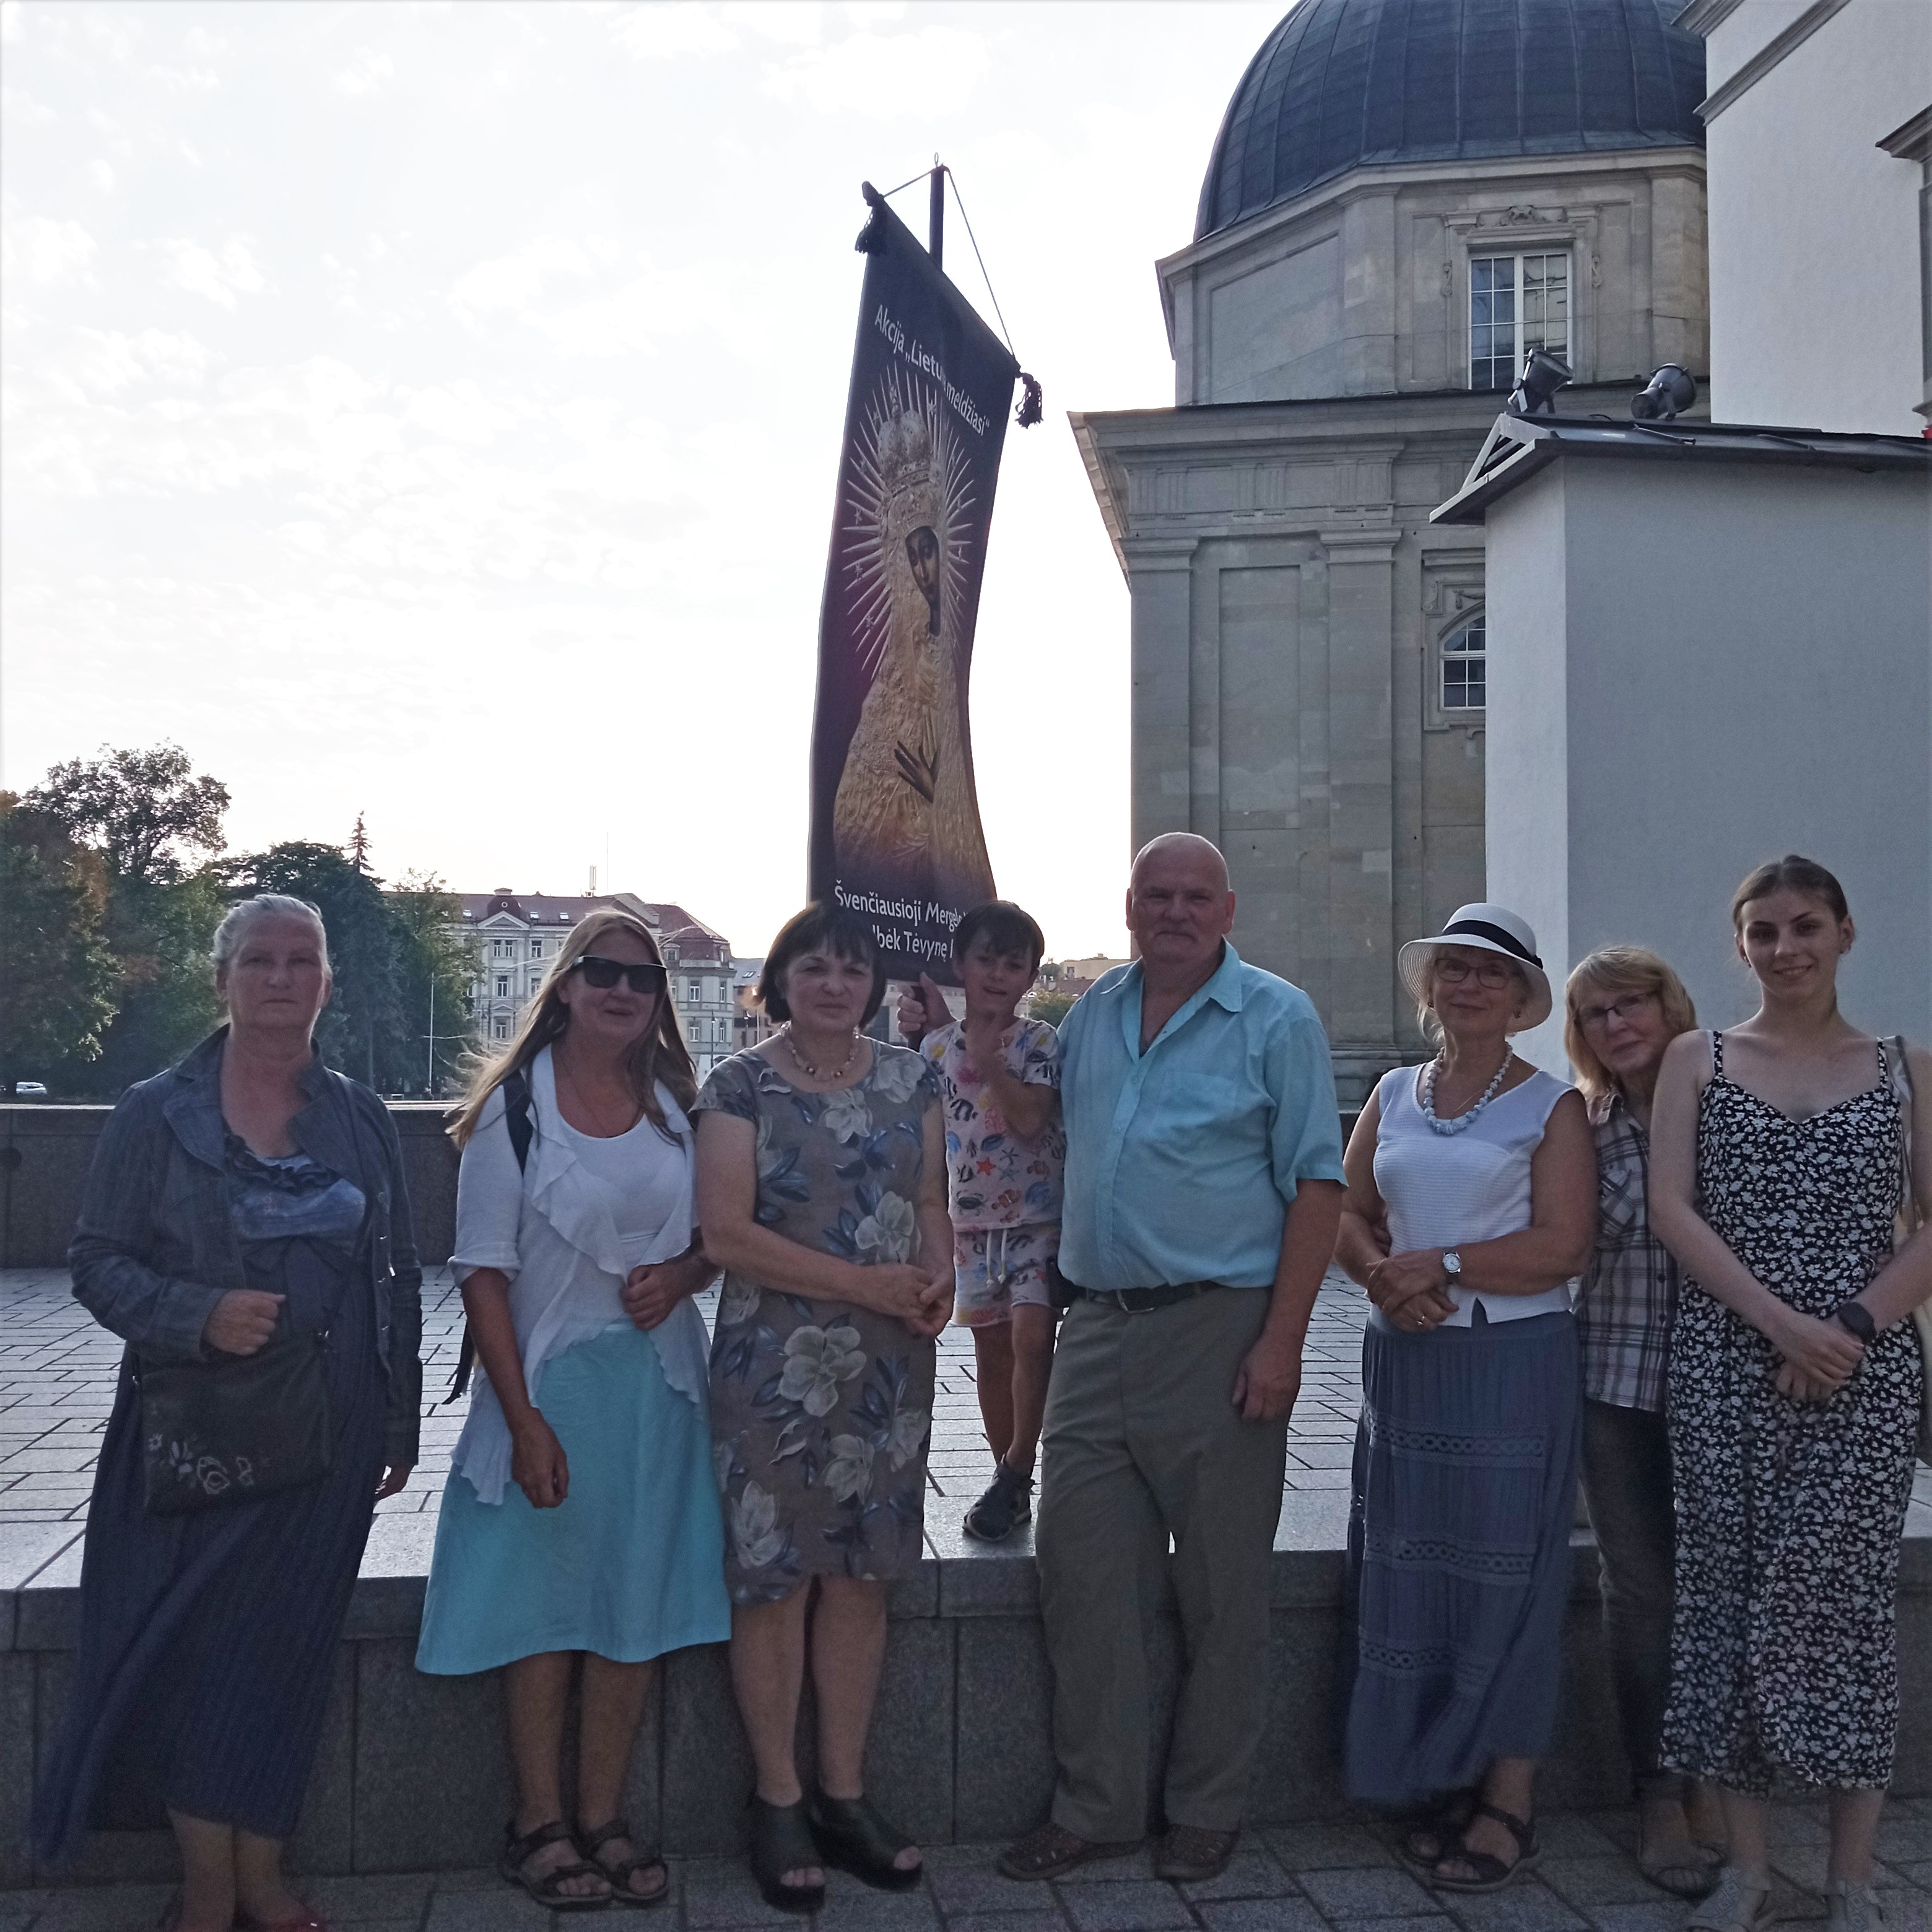 Vilniuje rugpjūčio 16d. meldėsi 7 maldininkai. Ėjome apie katedrą, Gedimino kalną.
